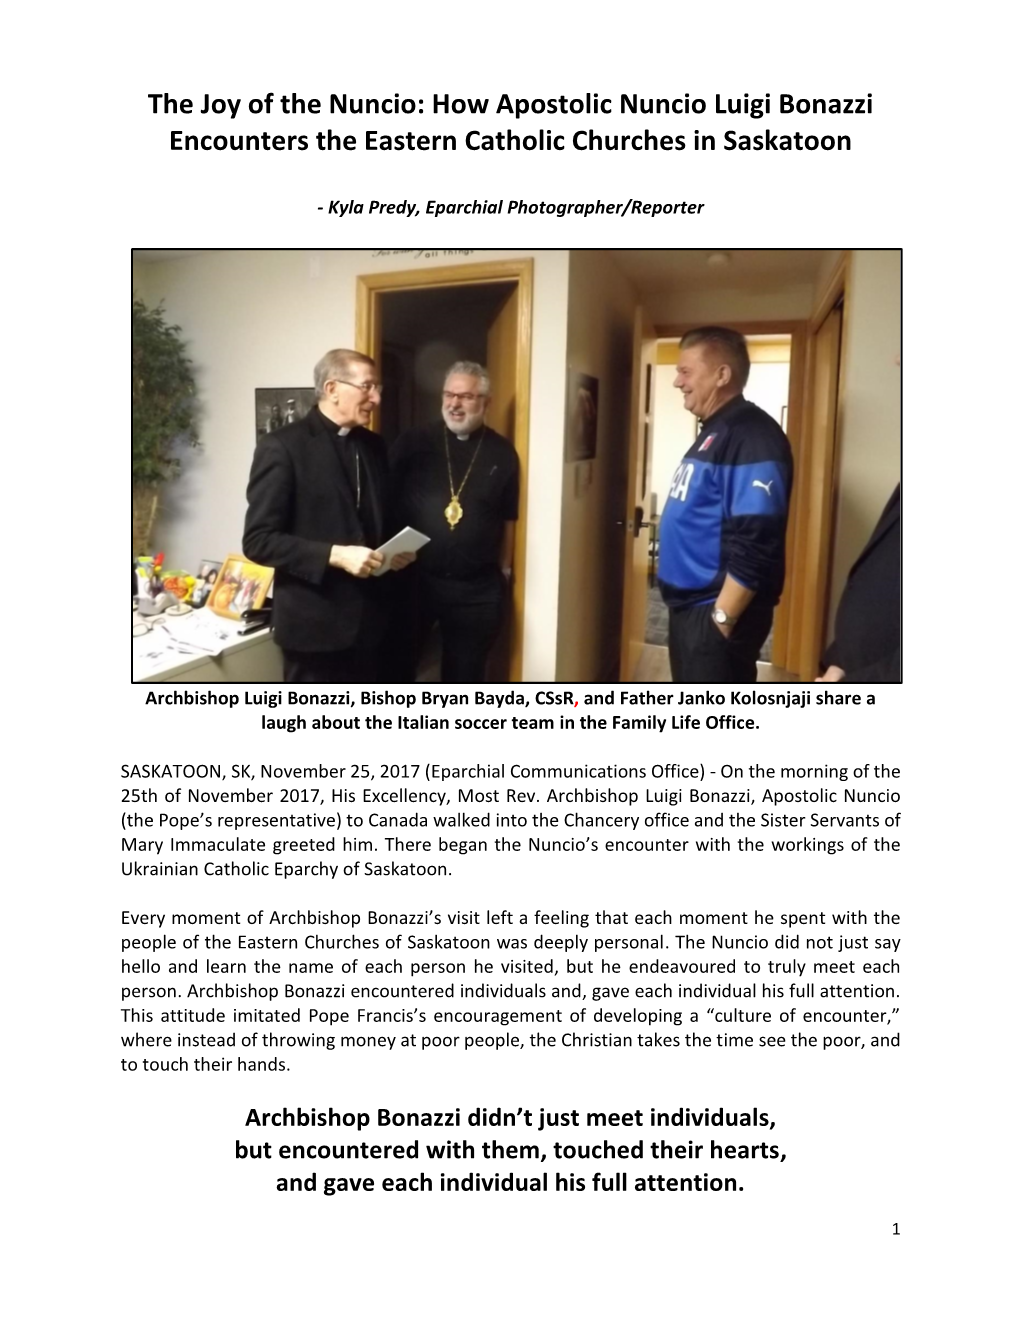 How Apostolic Nuncio Luigi Bonazzi Encounters the Eastern Catholic Churches in Saskatoon